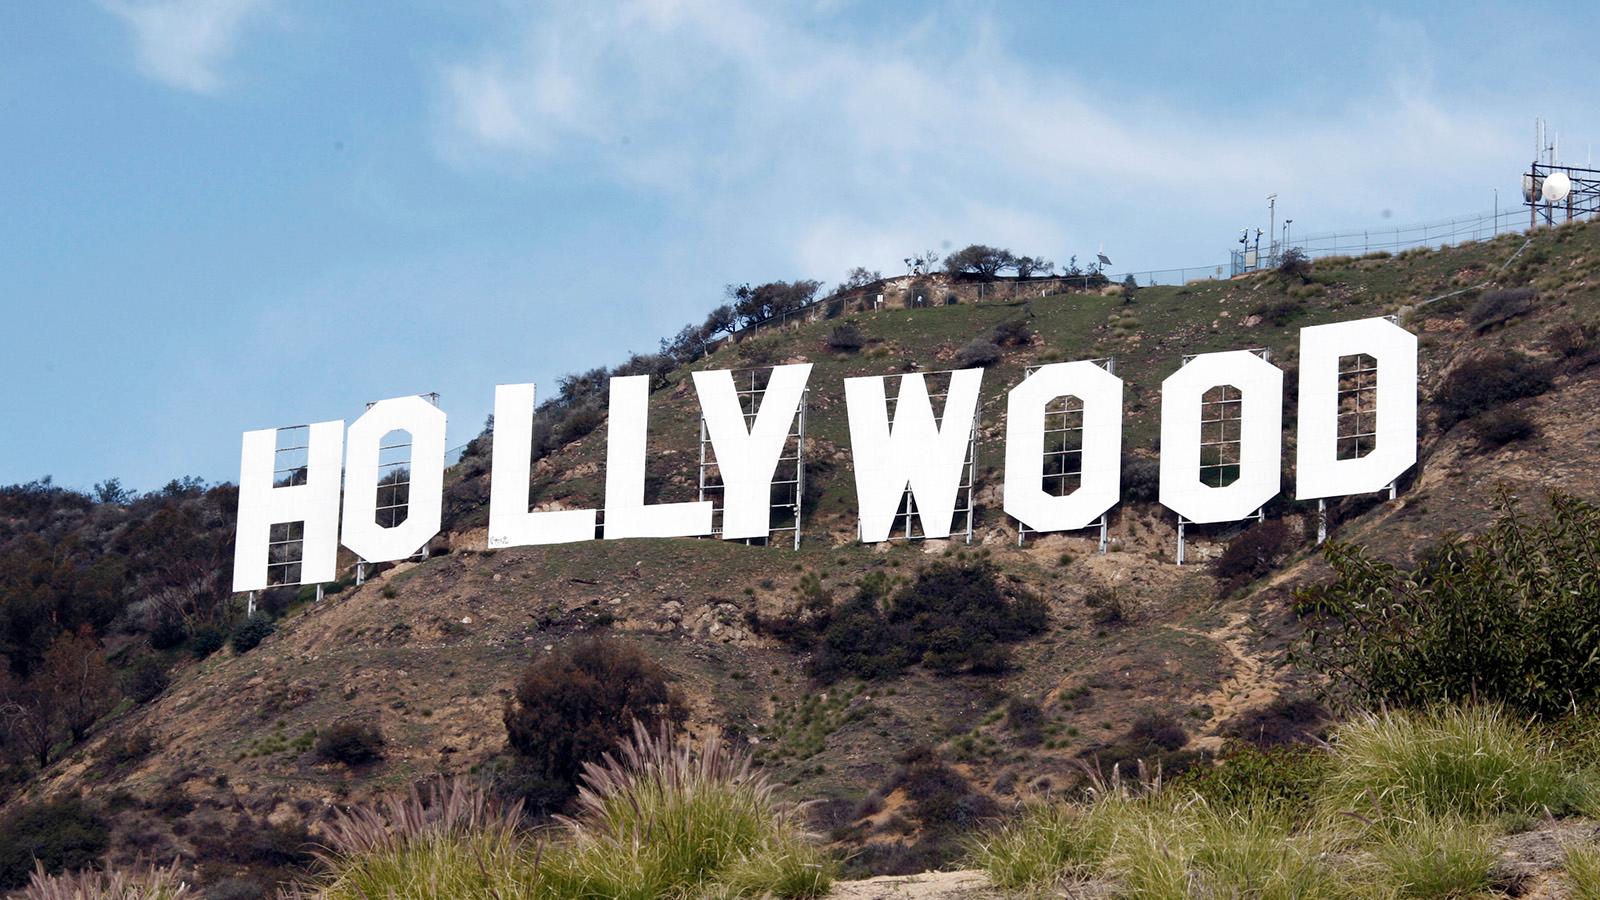 Den berömda Hollywoodskylten i Hollywood Hills.